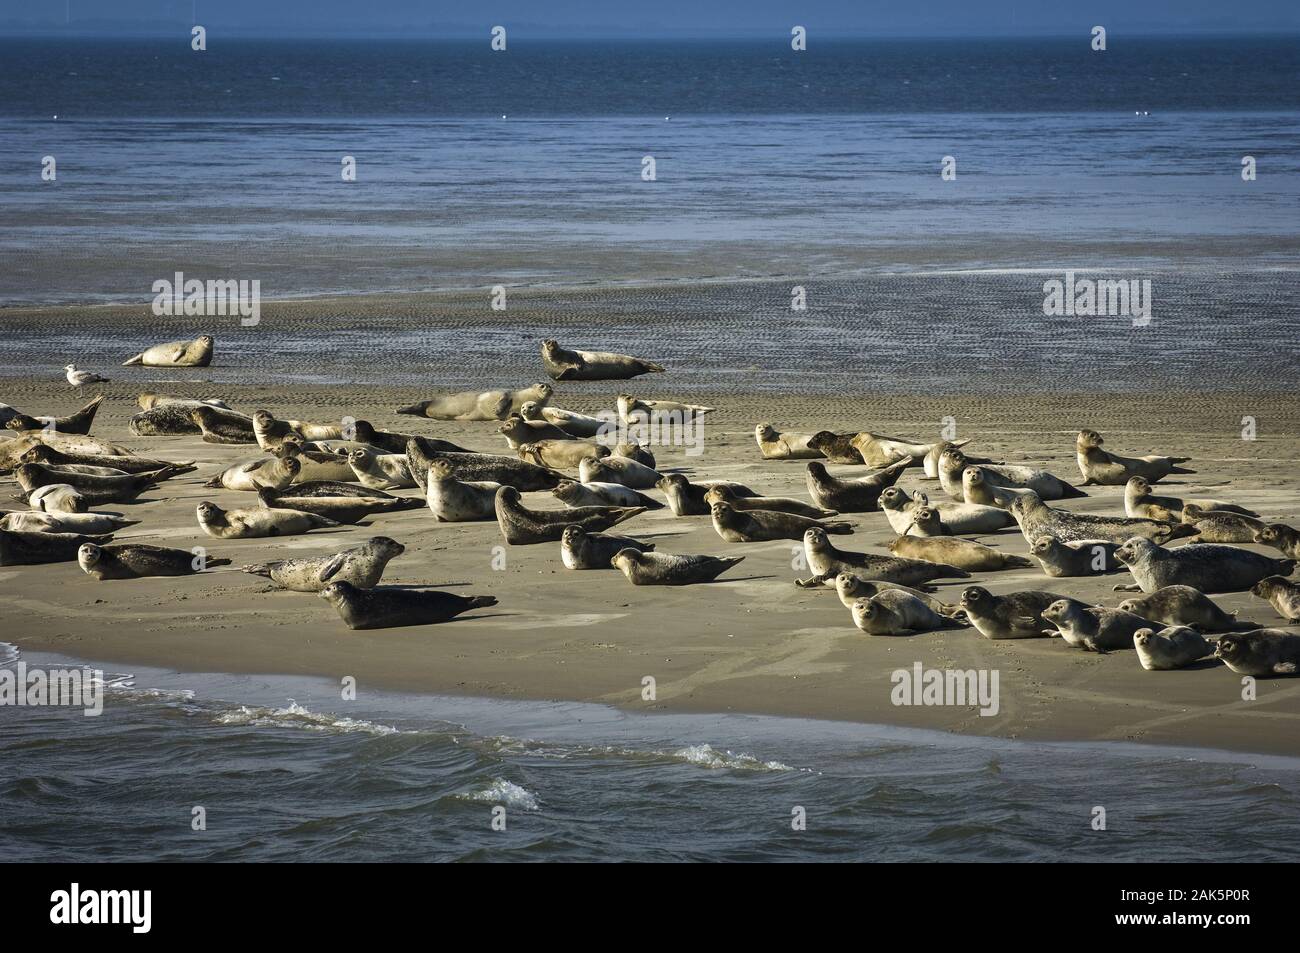 Nationalpark Niedersaechsisches Wattenmeer: Seehunde auf einer Sandbank, Elbe und Weser | usage worldwide Stock Photo